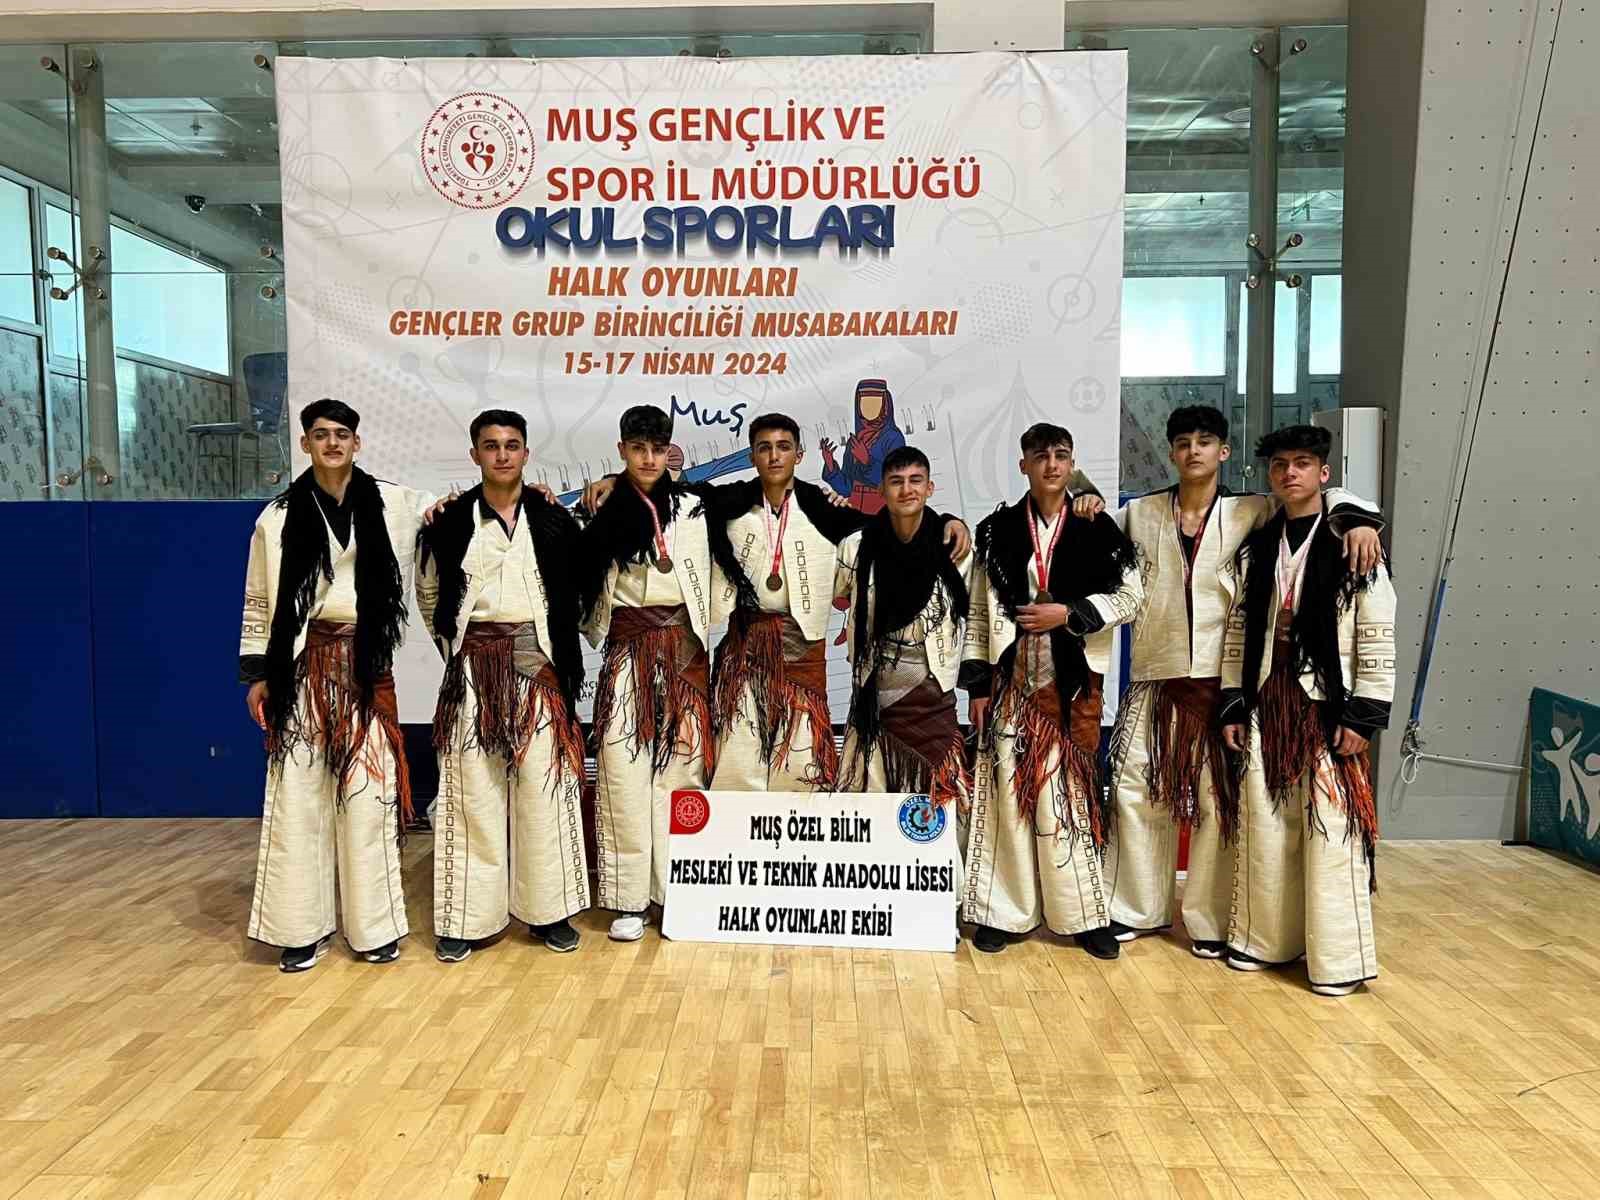 Muşlu gençler Türkiye şampiyonasına gidiyor
